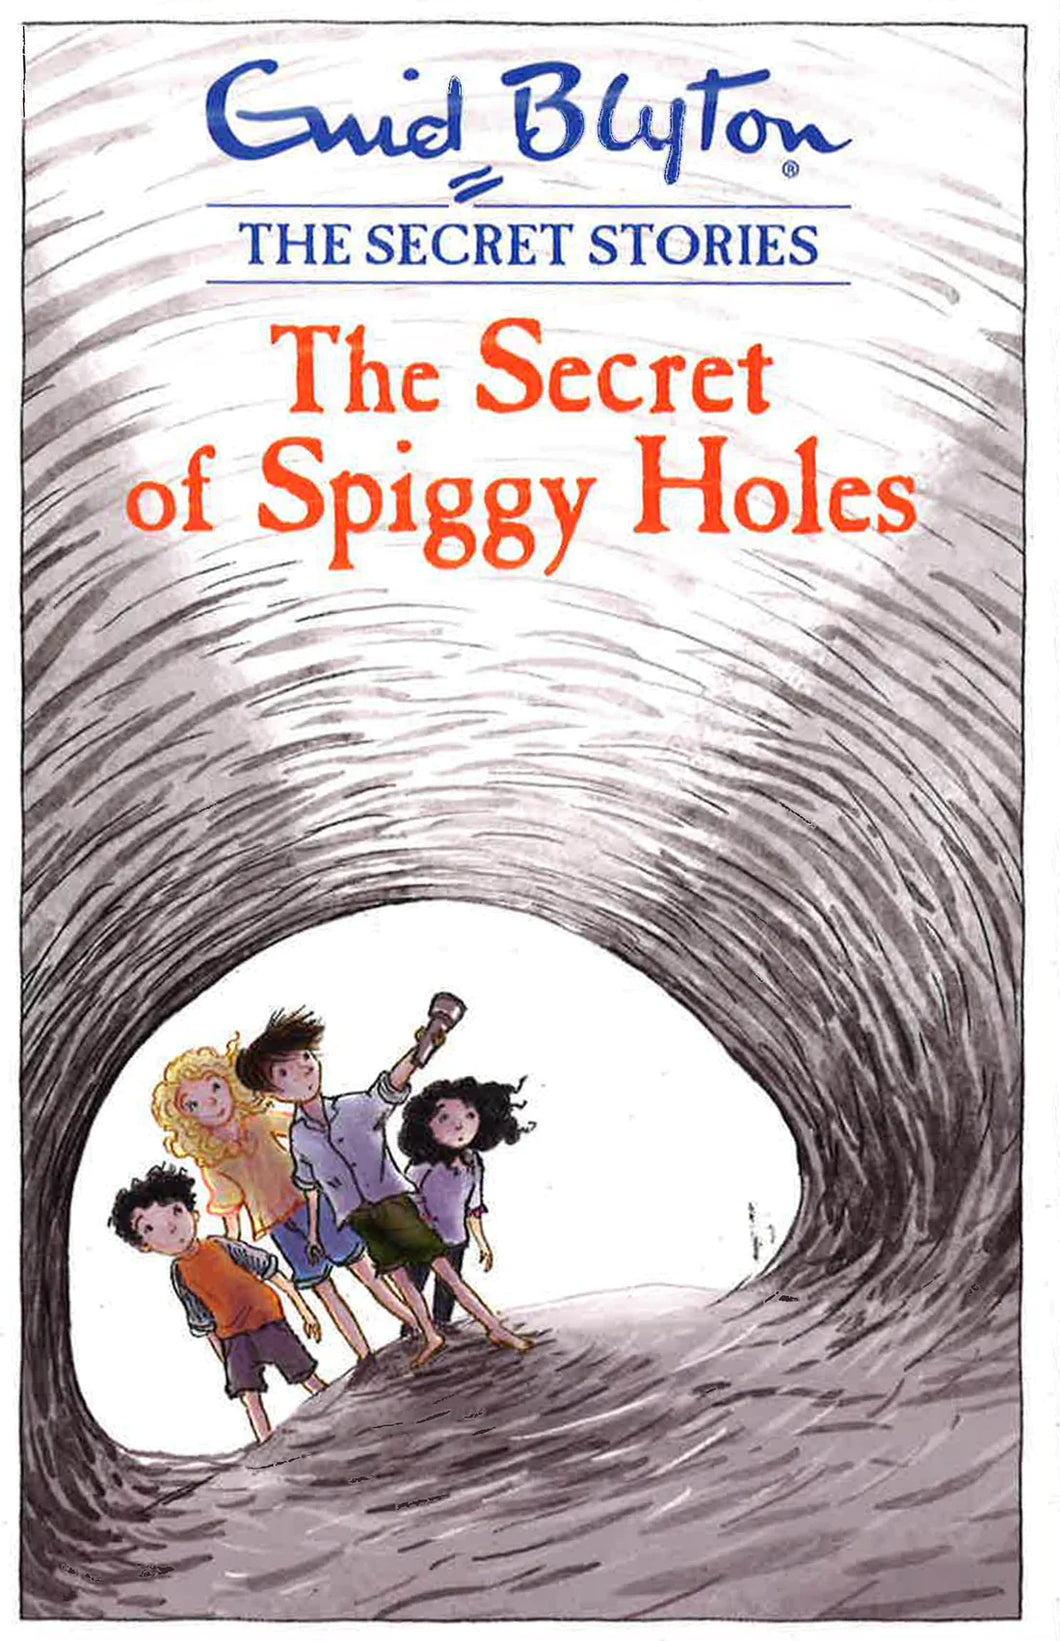 The Scret of Spiggy Holes